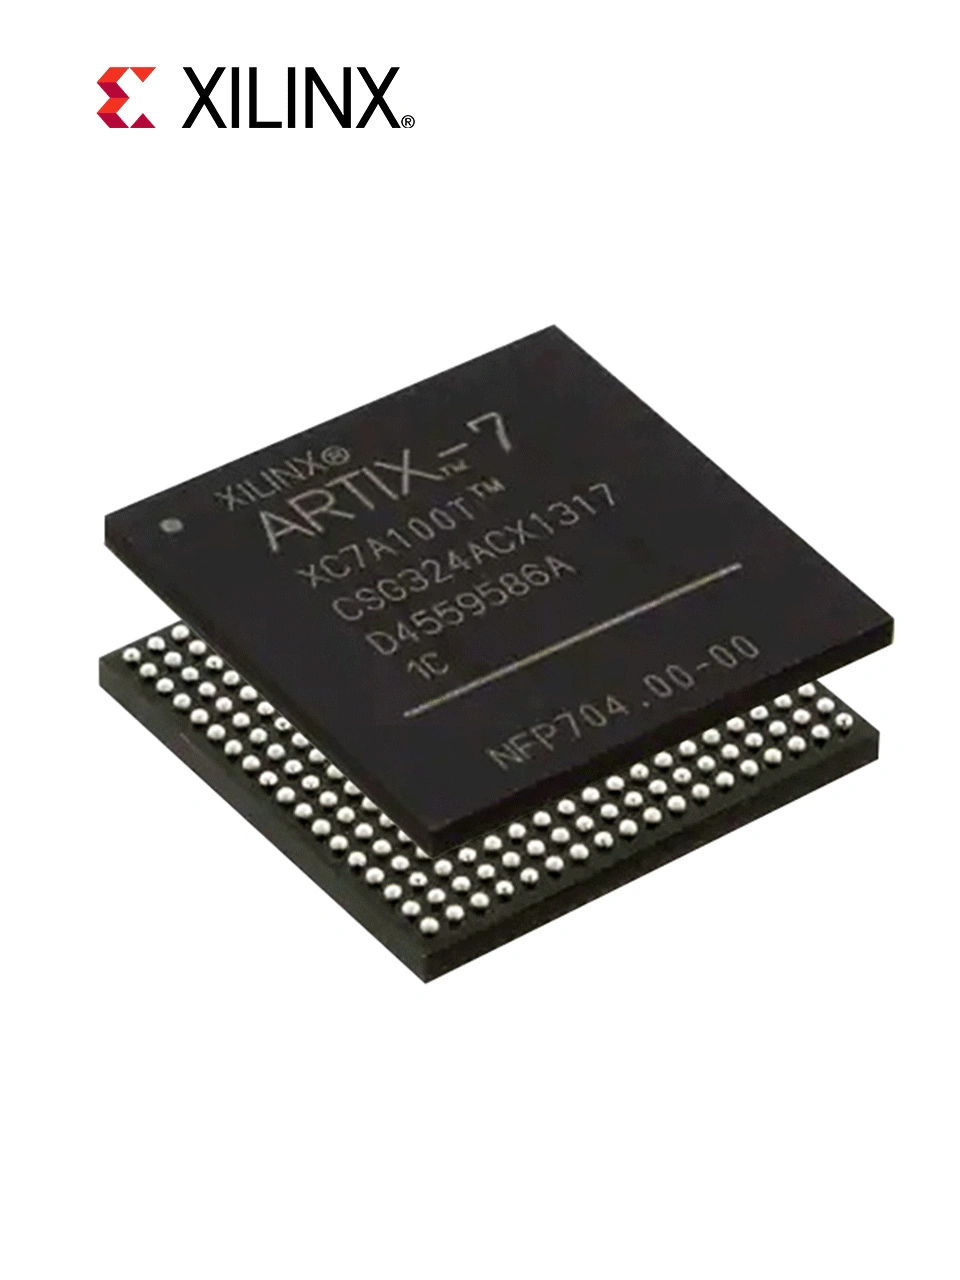 Xilinx IC Soc Cortex-A9 Embedded System on Chip